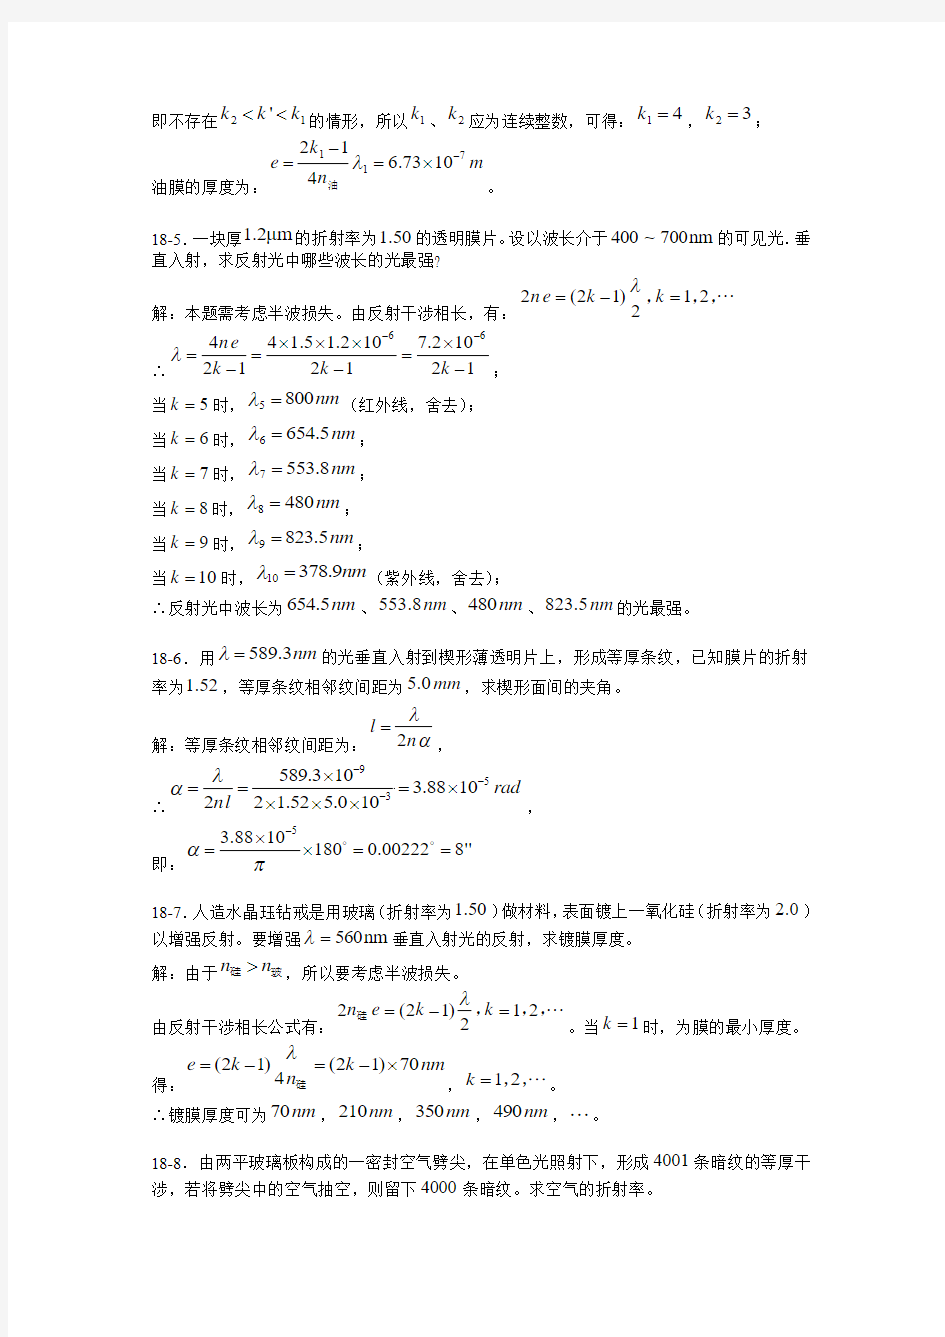 大学物理_上海交通大学下册_17课后习题答案